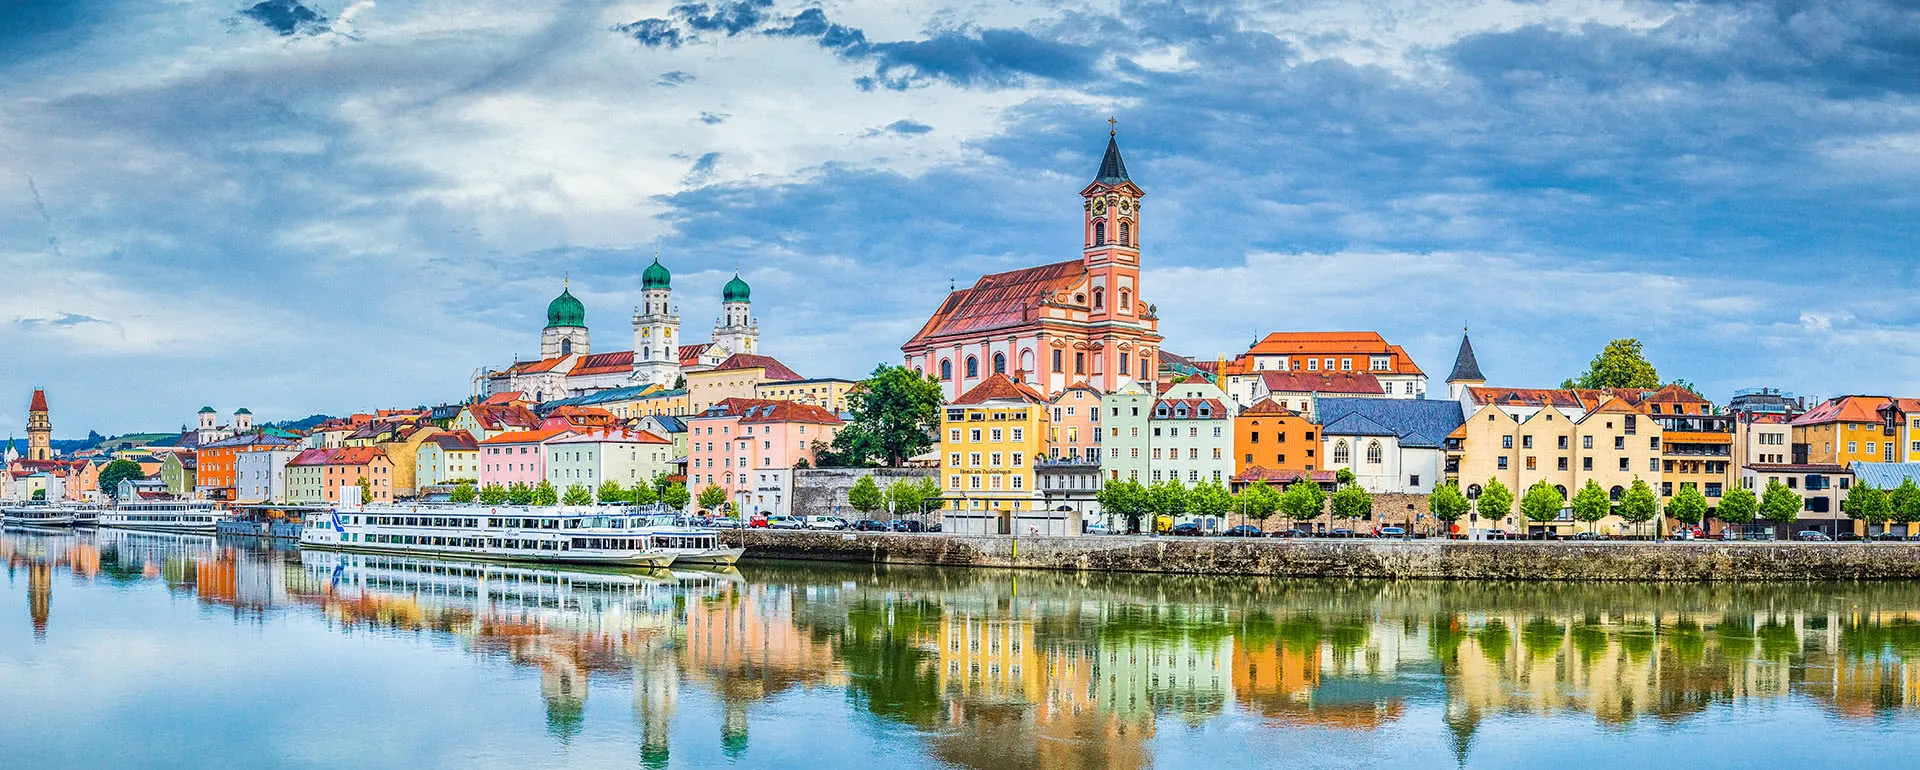 Passau - das Reiseziel mit Jugendherbergen